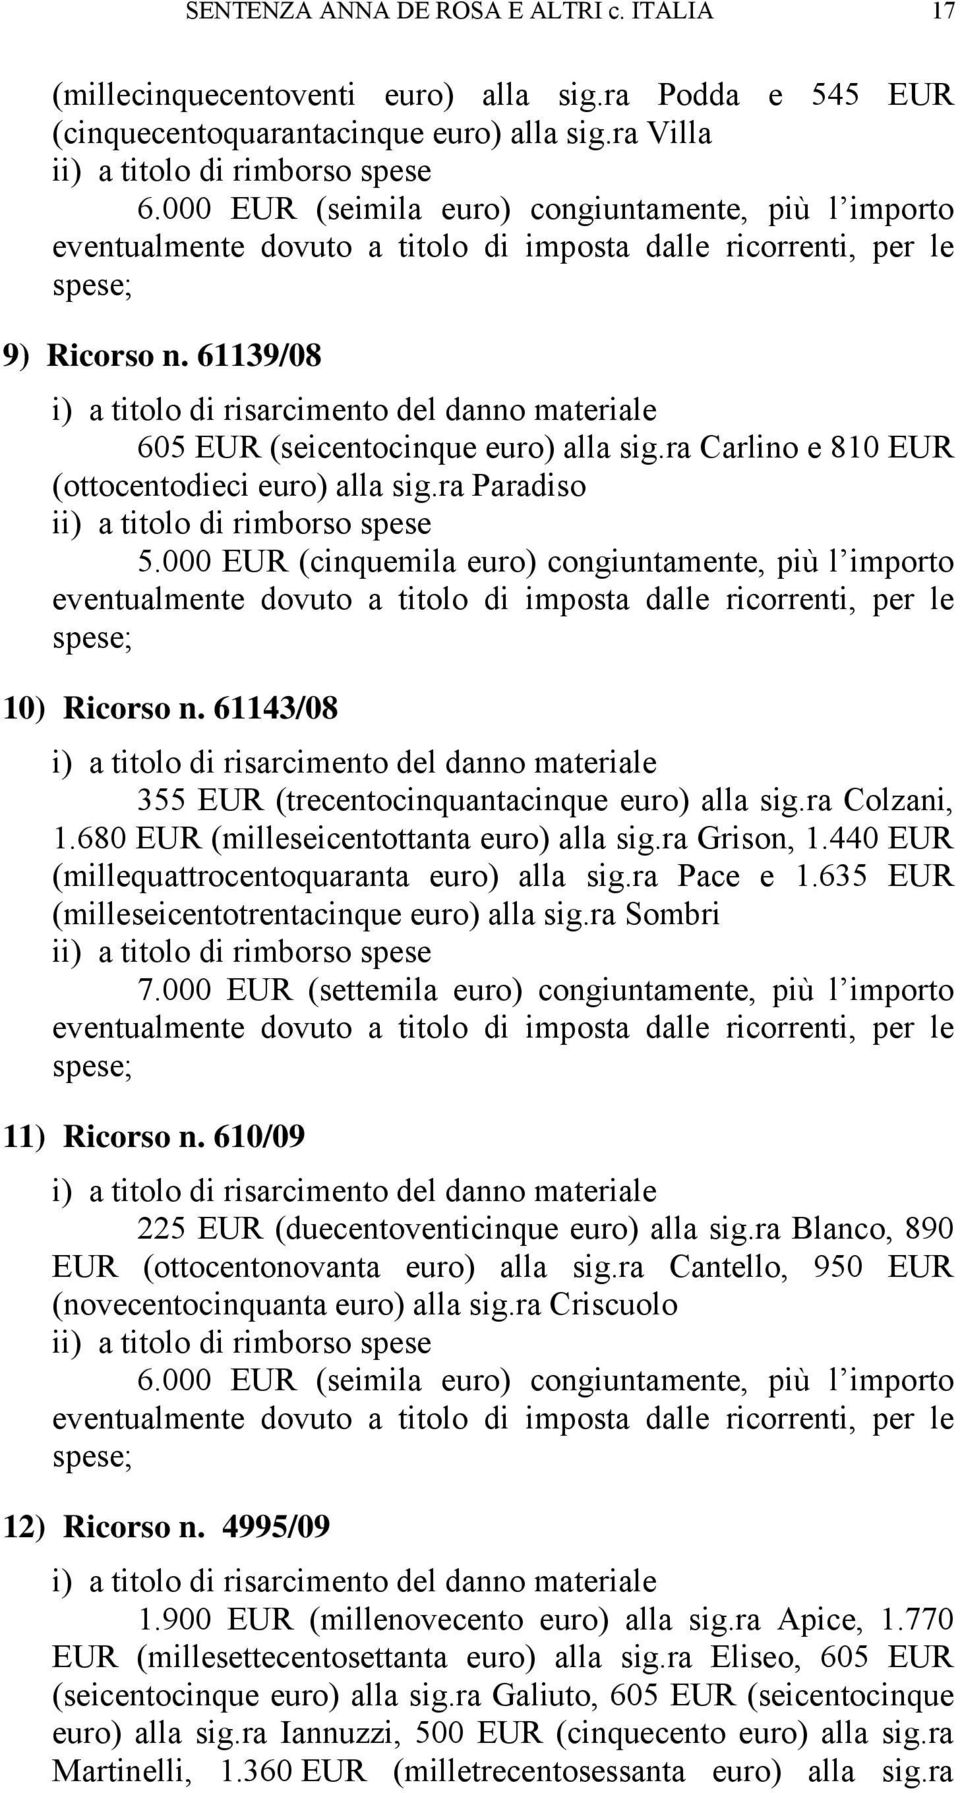 61139/08 i) a titolo di risarcimento del danno materiale 605 EUR (seicentocinque euro) alla sig.ra Carlino e 810 EUR (ottocentodieci euro) alla sig.ra Paradiso ii) a titolo di rimborso spese 5.